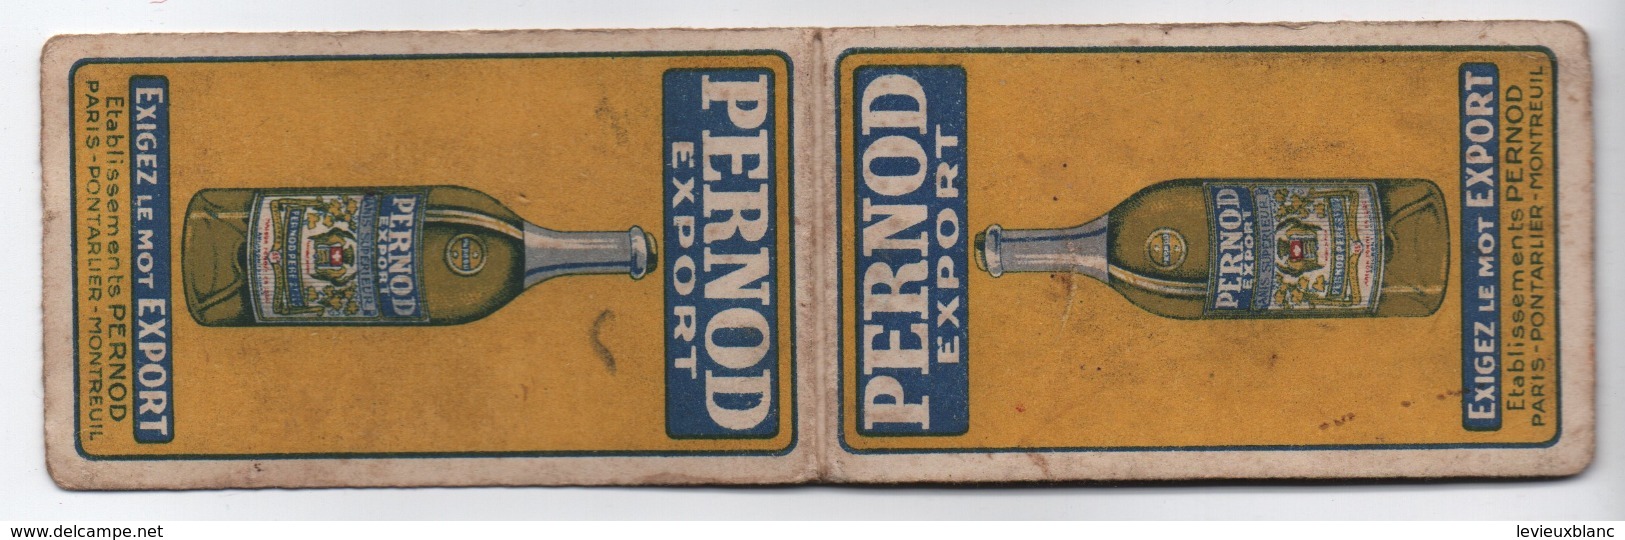 Petit Carnet Publicitaire/ Pernod Export/Exigez Le Mot Export/Paris - Pontarlier -Montreuil / Vers 1930        VPN241 - Other & Unclassified